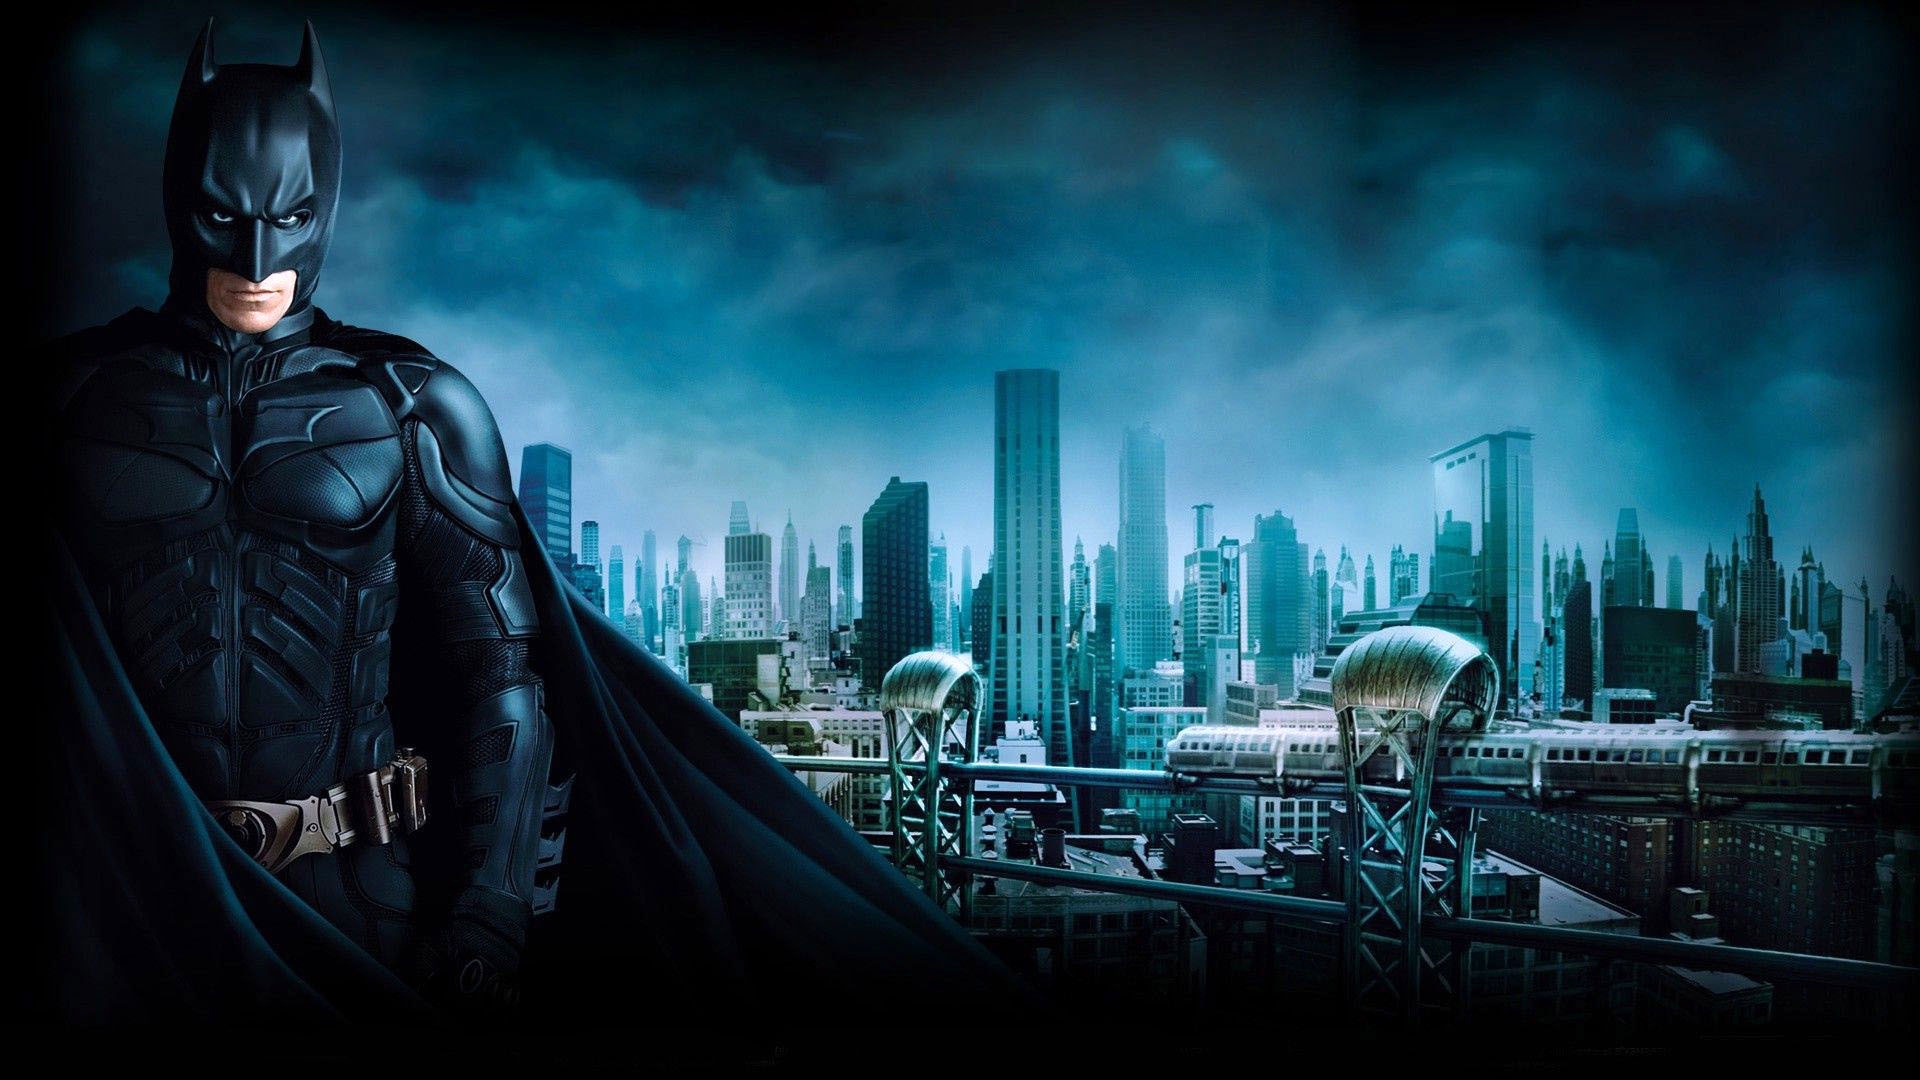 Gotham City   The Dark Knight   1920x1080   Full HD 169   Wallpaper